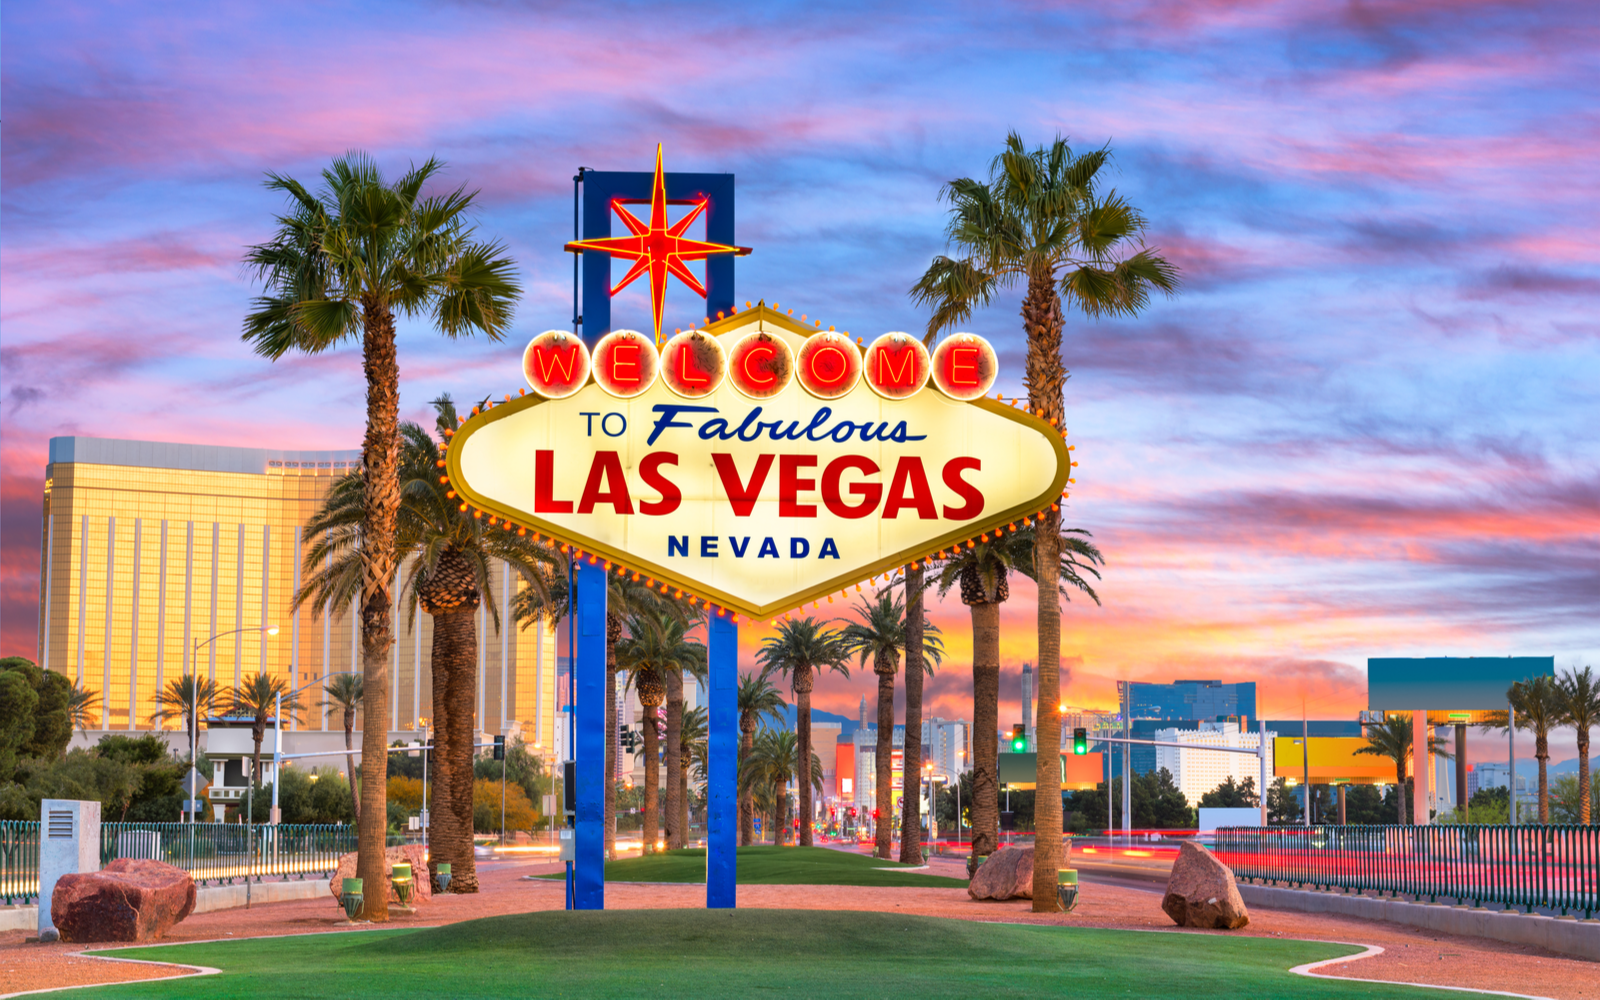 The 15 Best Hotels in Las Vegas in 2023